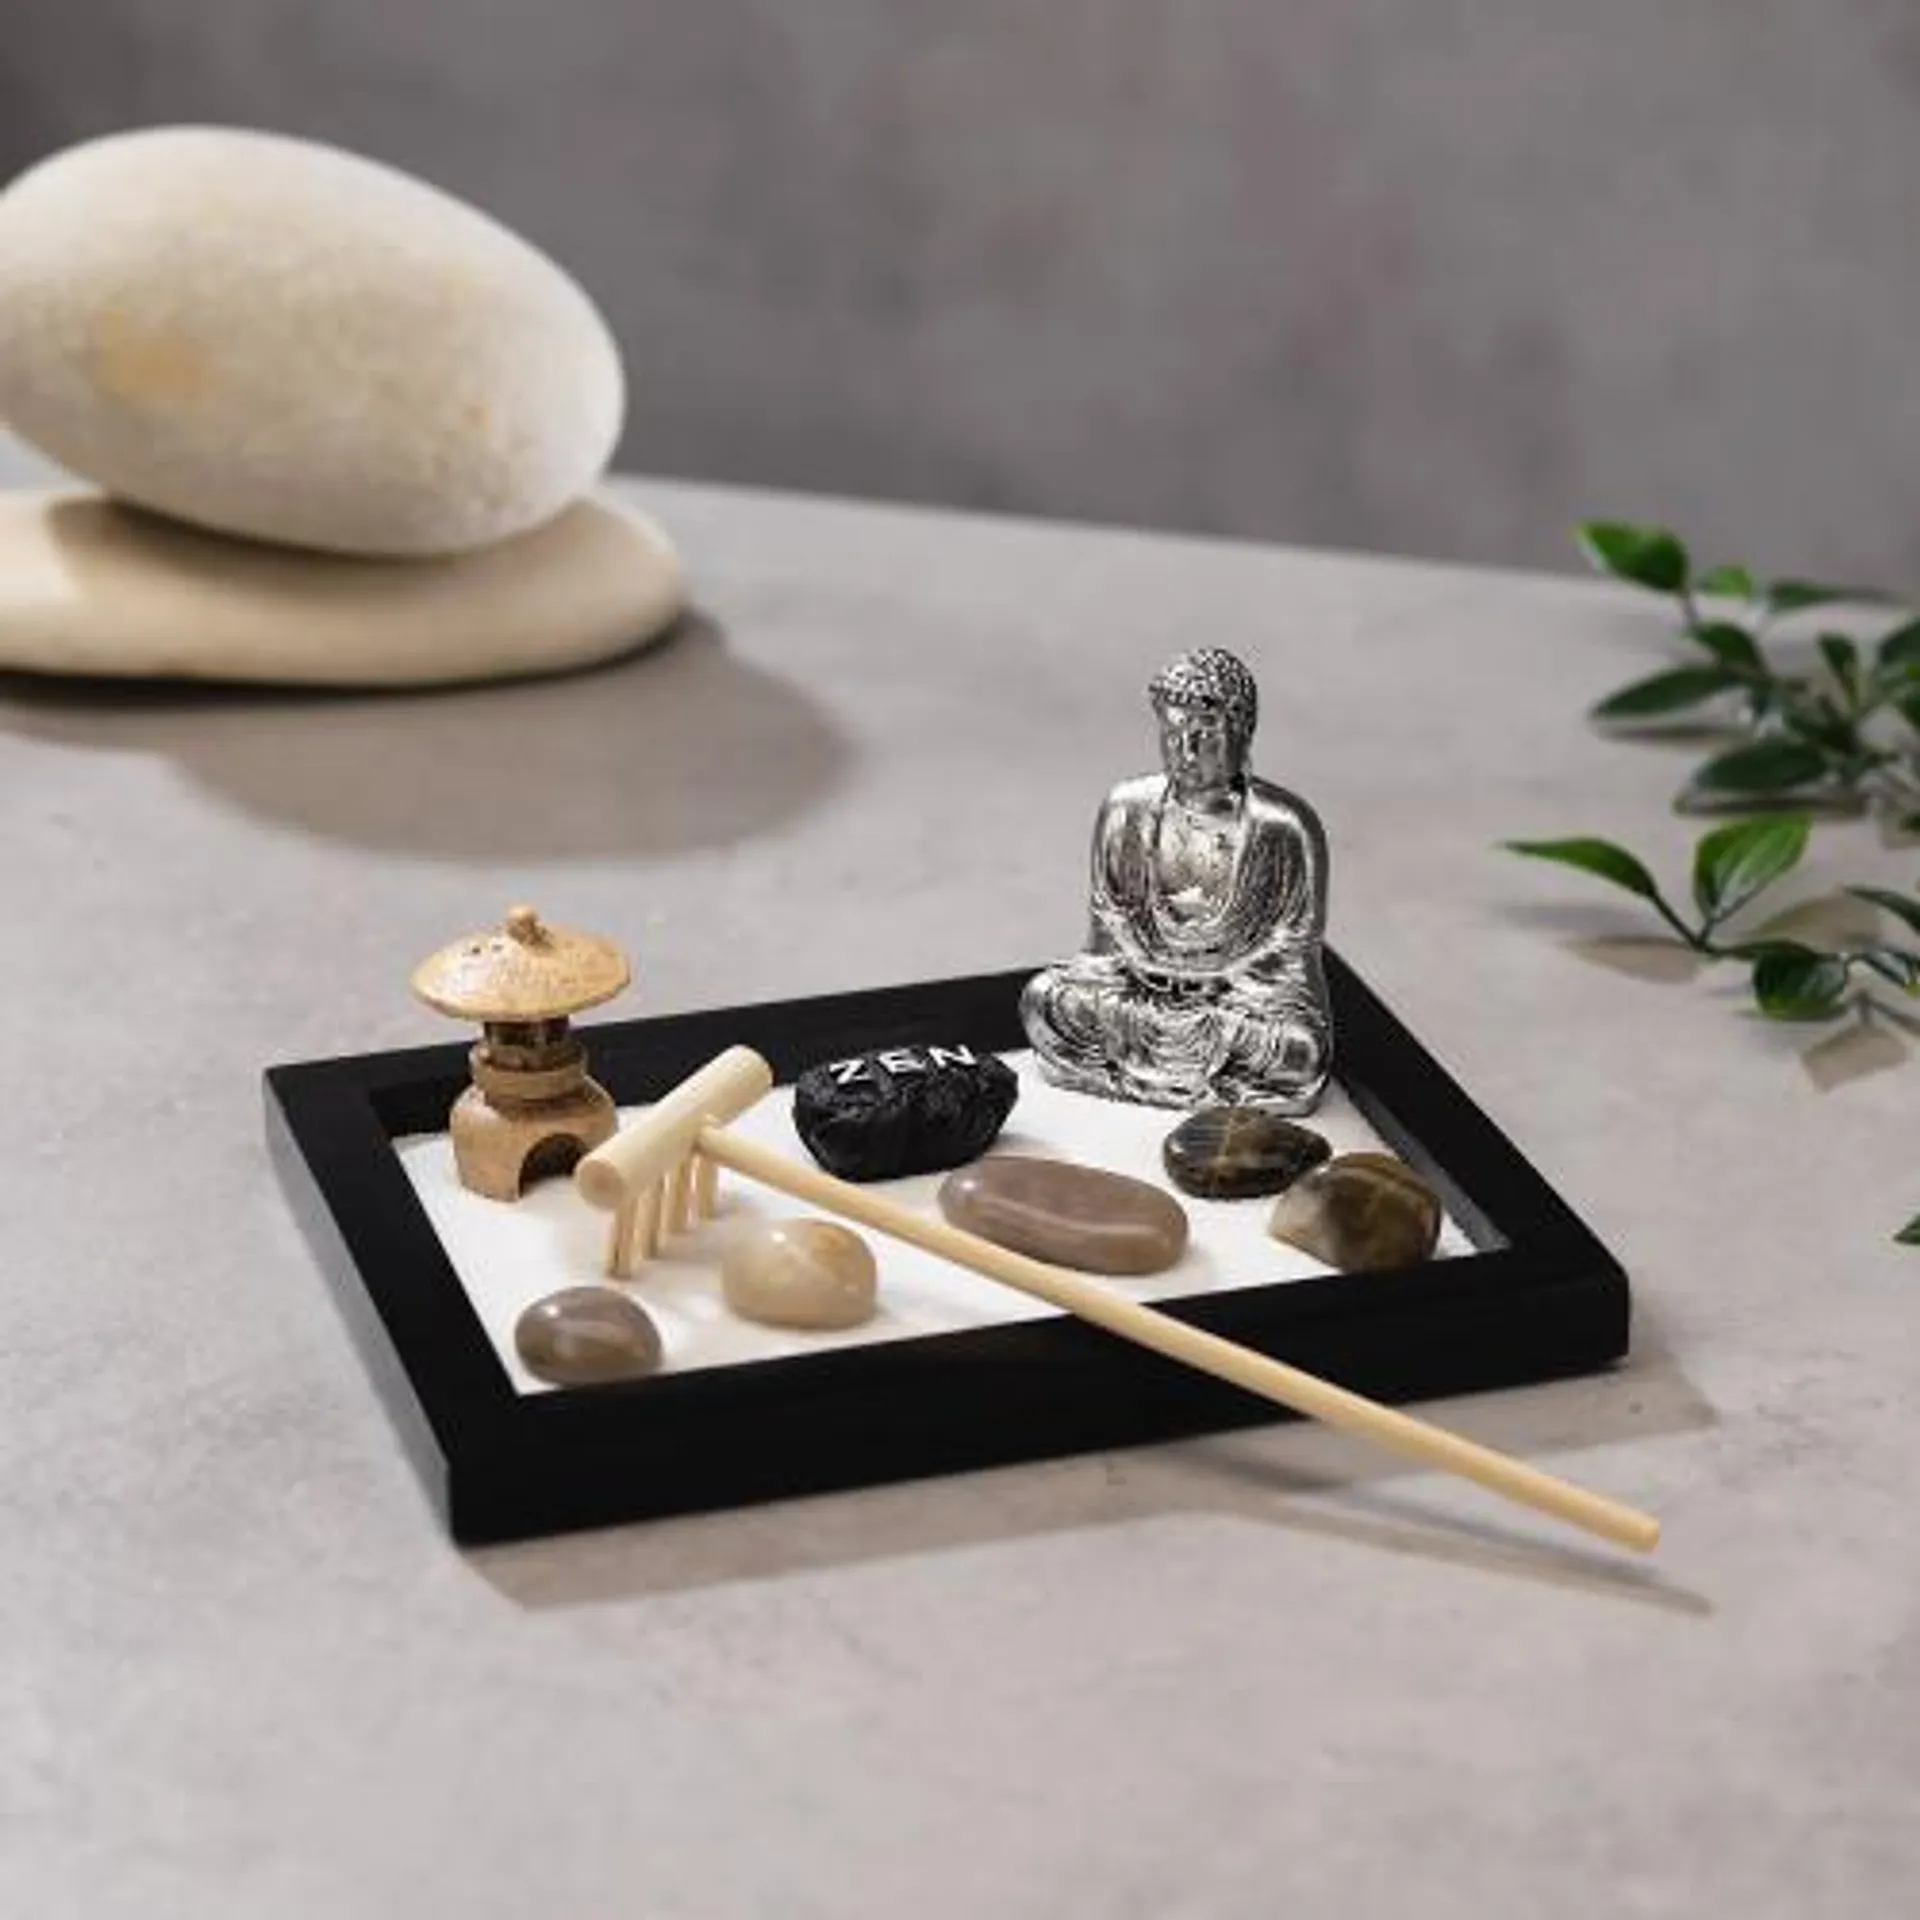 Build Your Own Zen Garden